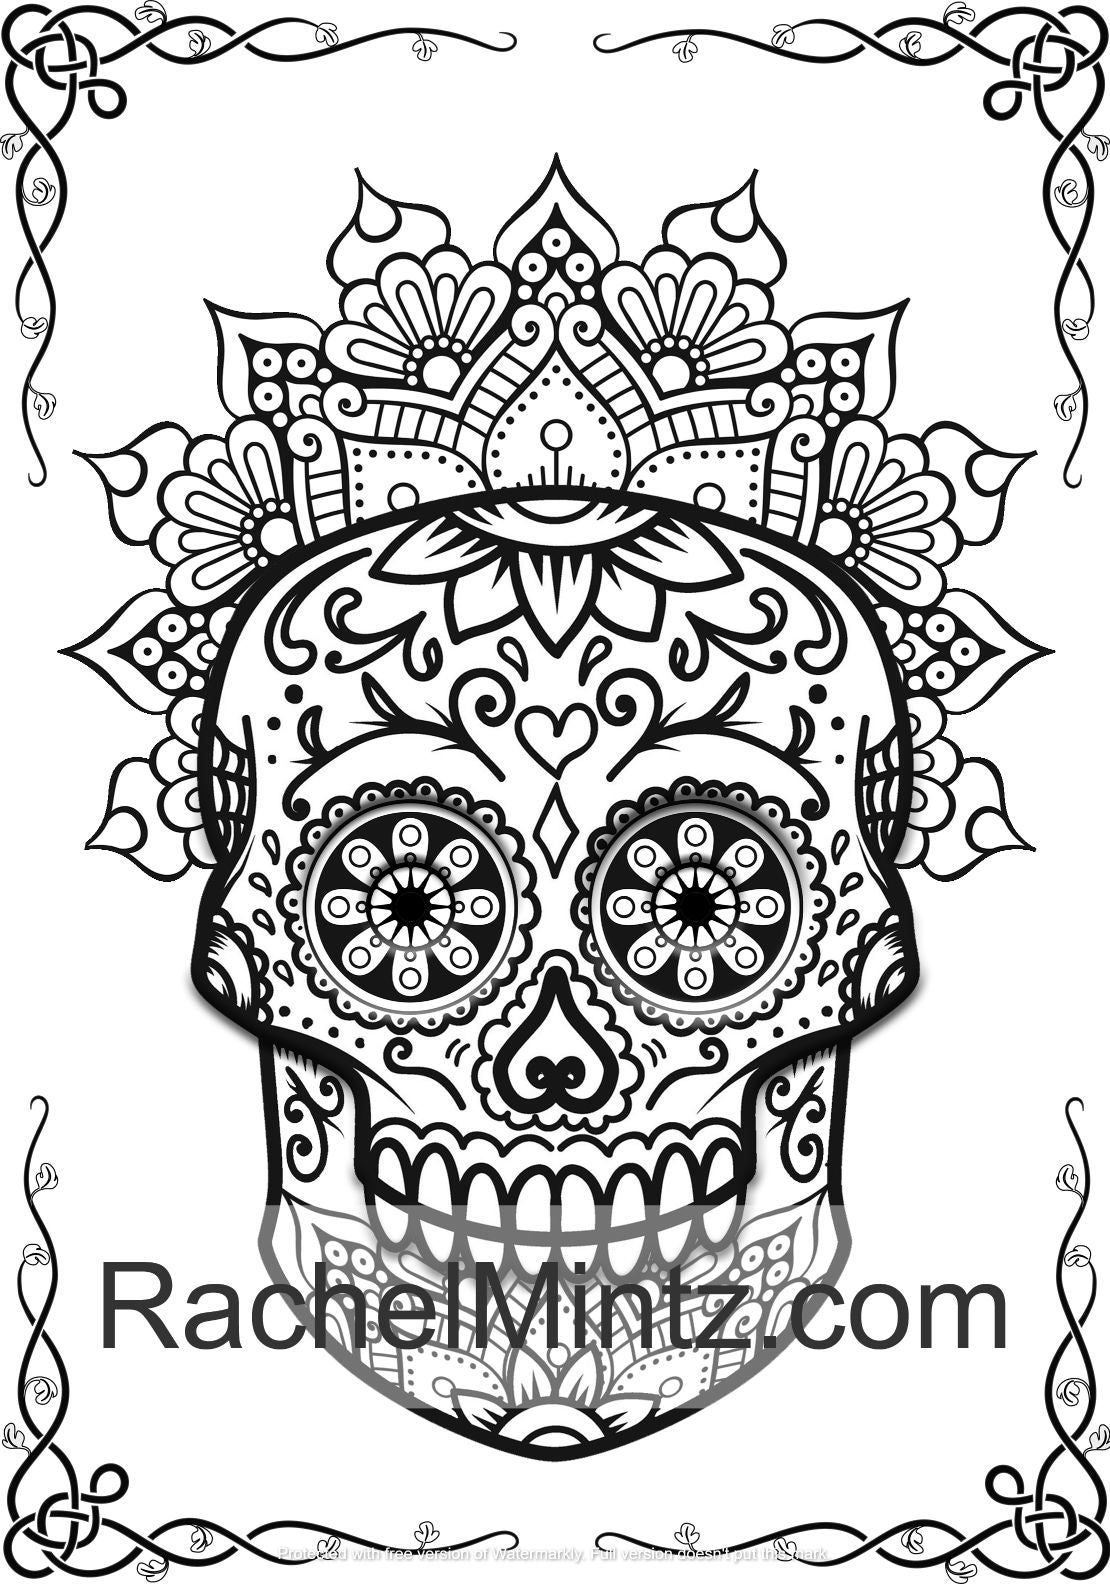 Skull Mandalas Coloring Book - Sugar Skulls With Decorated Designs (Printable PDF Format) 